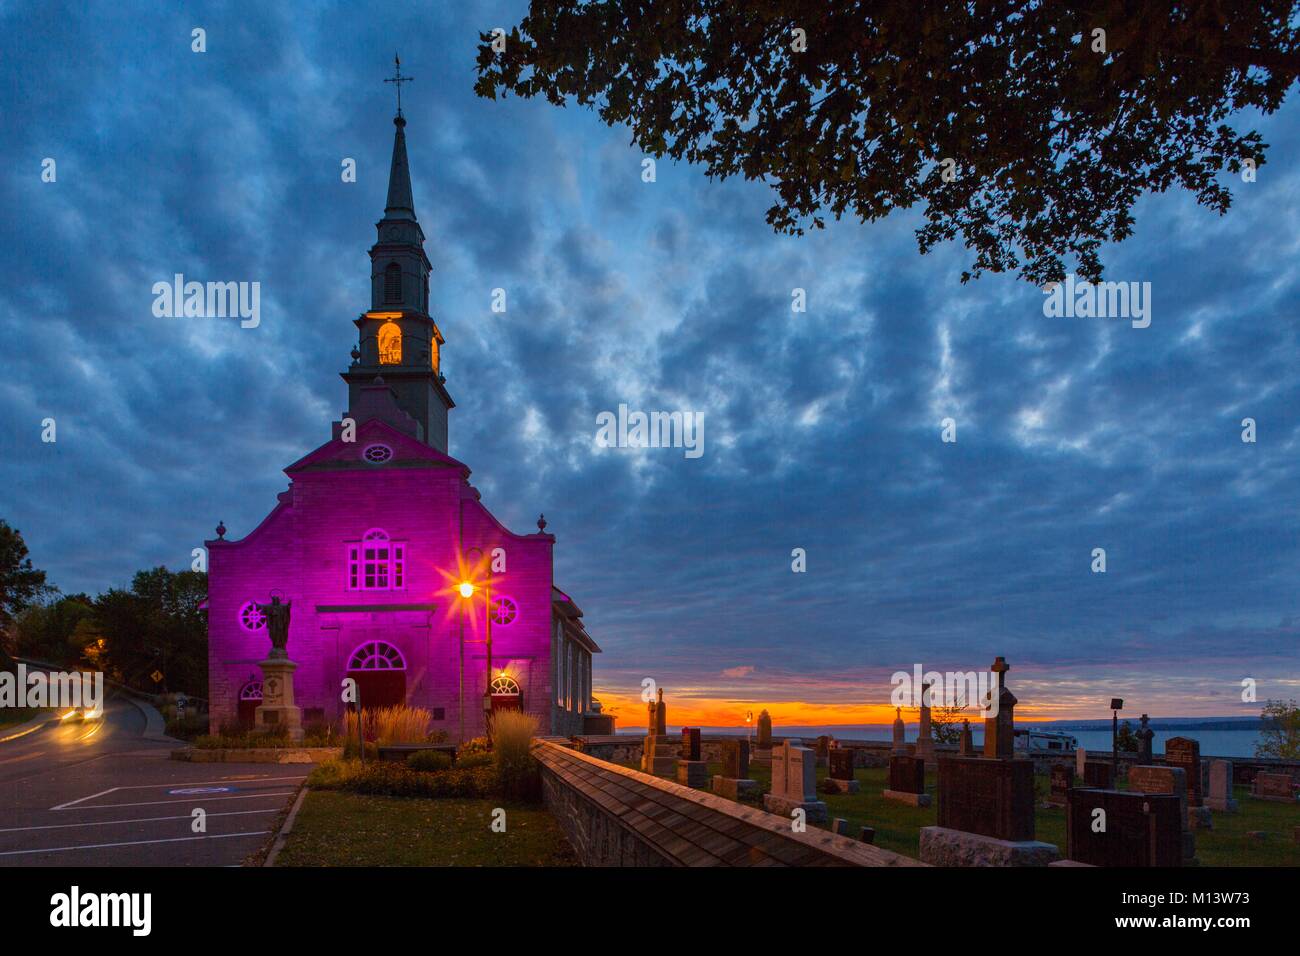 Kanada, Provinz Quebec, in der Region von Quebec City, die Insel von Orleans, Kirche von Saint-Jean-de-l'Île-d'Orléans und seine Nacht Beleuchtung bei Sonnenaufgang, rechts das Dorf Friedhof Stockfoto